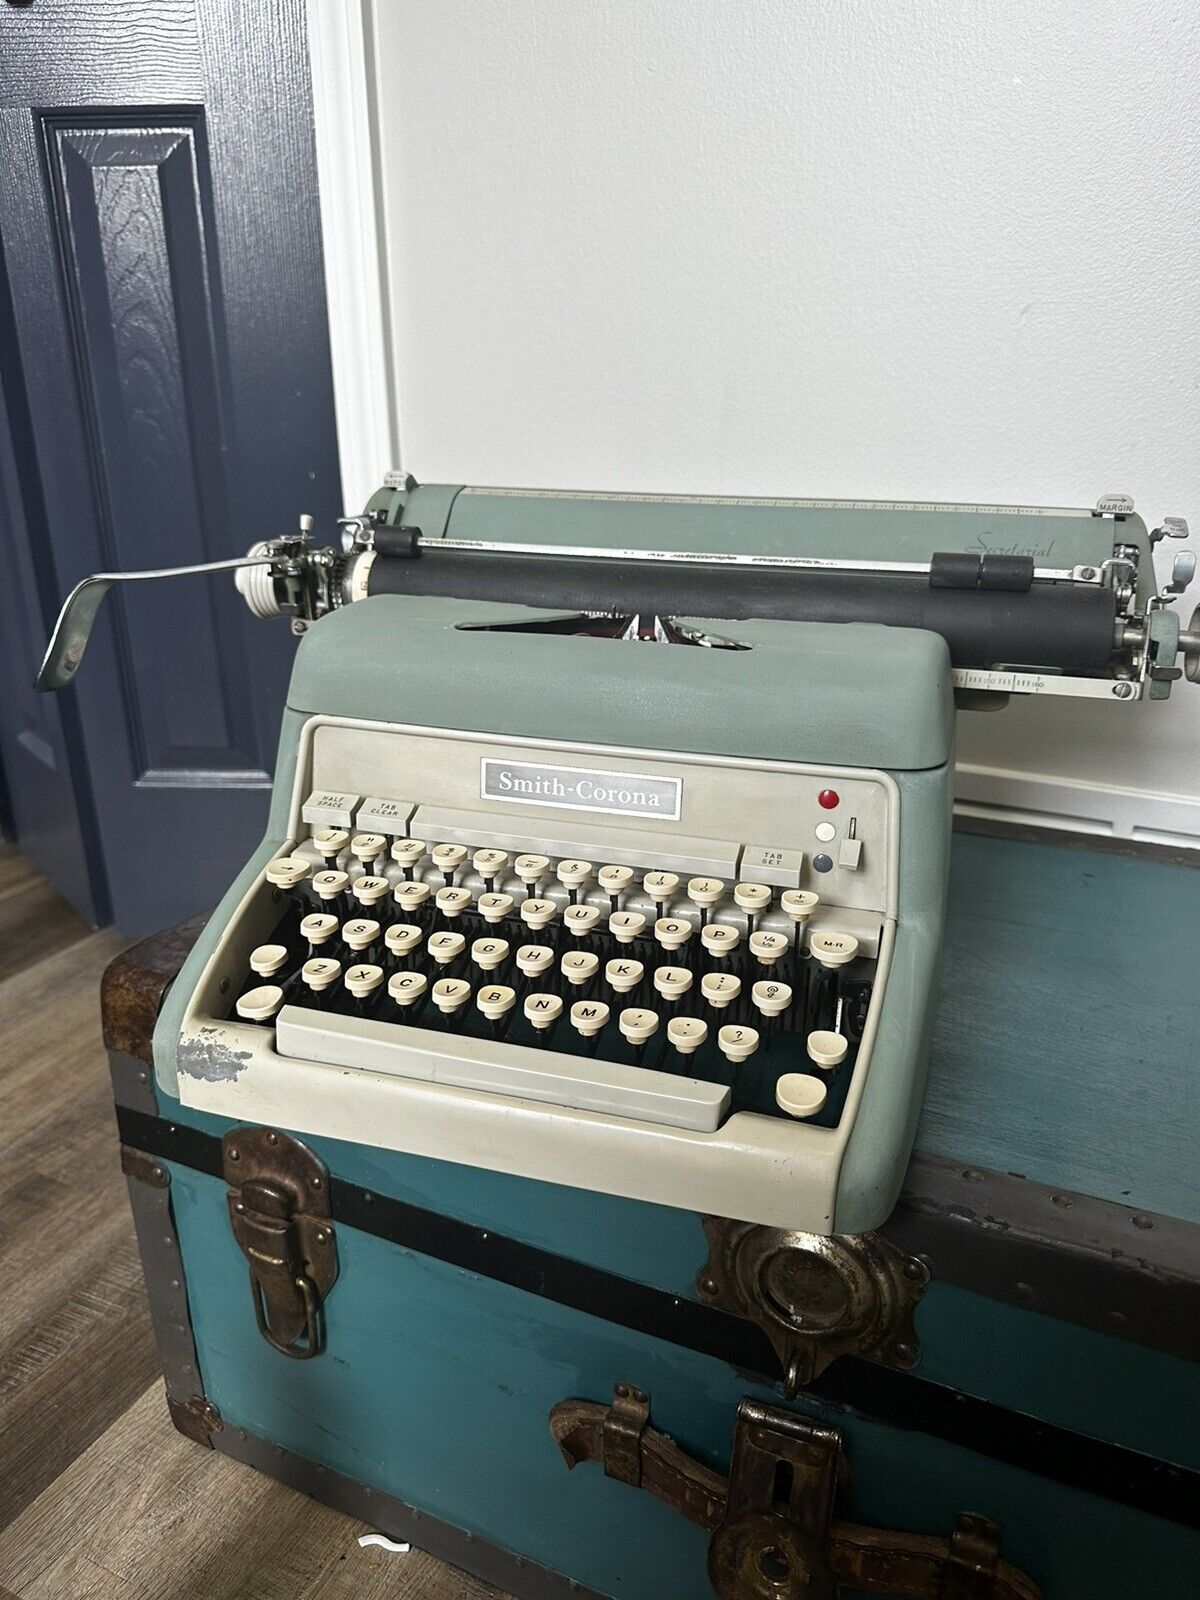 Smith Corona Secretarial Manual Typewriter